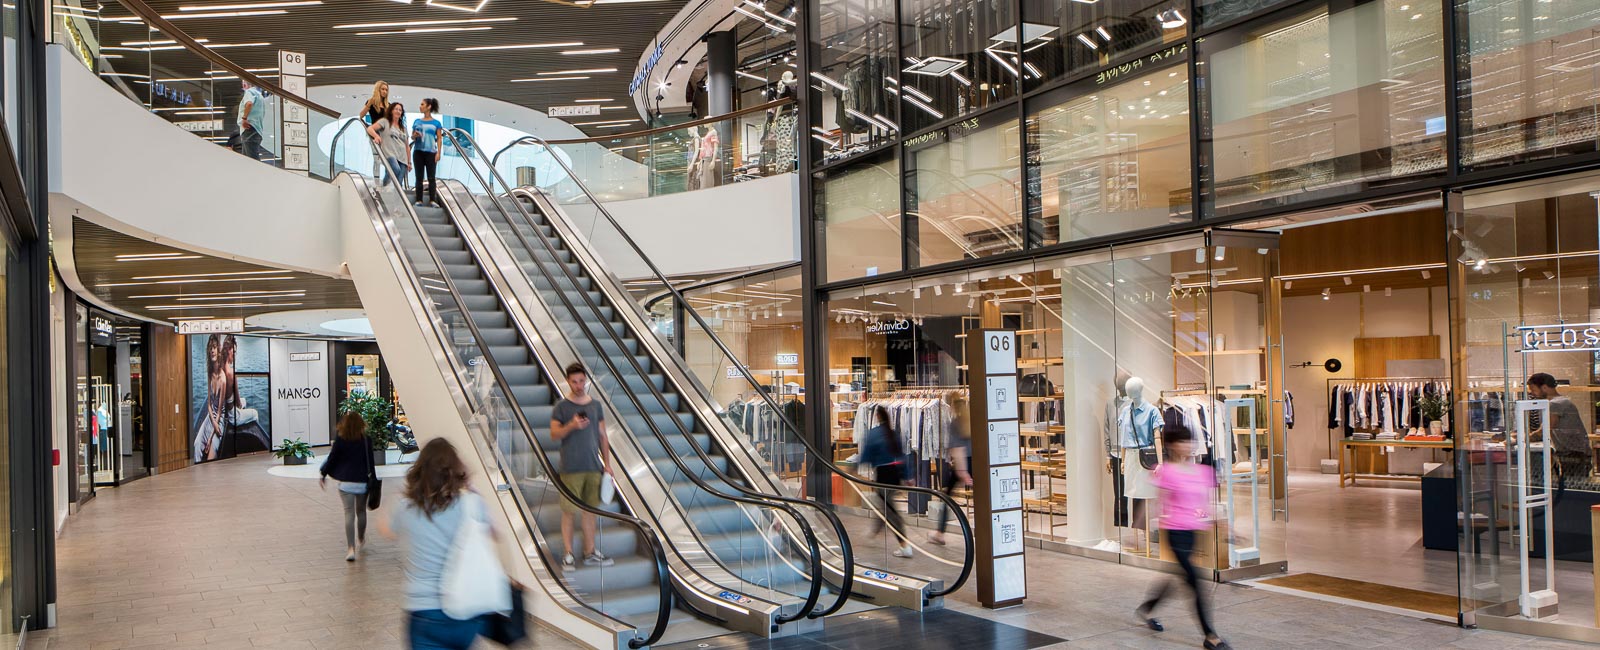 Dieses Bild zeigt das Einkaufszentrum mit vielen Shops und Besucher:innen.